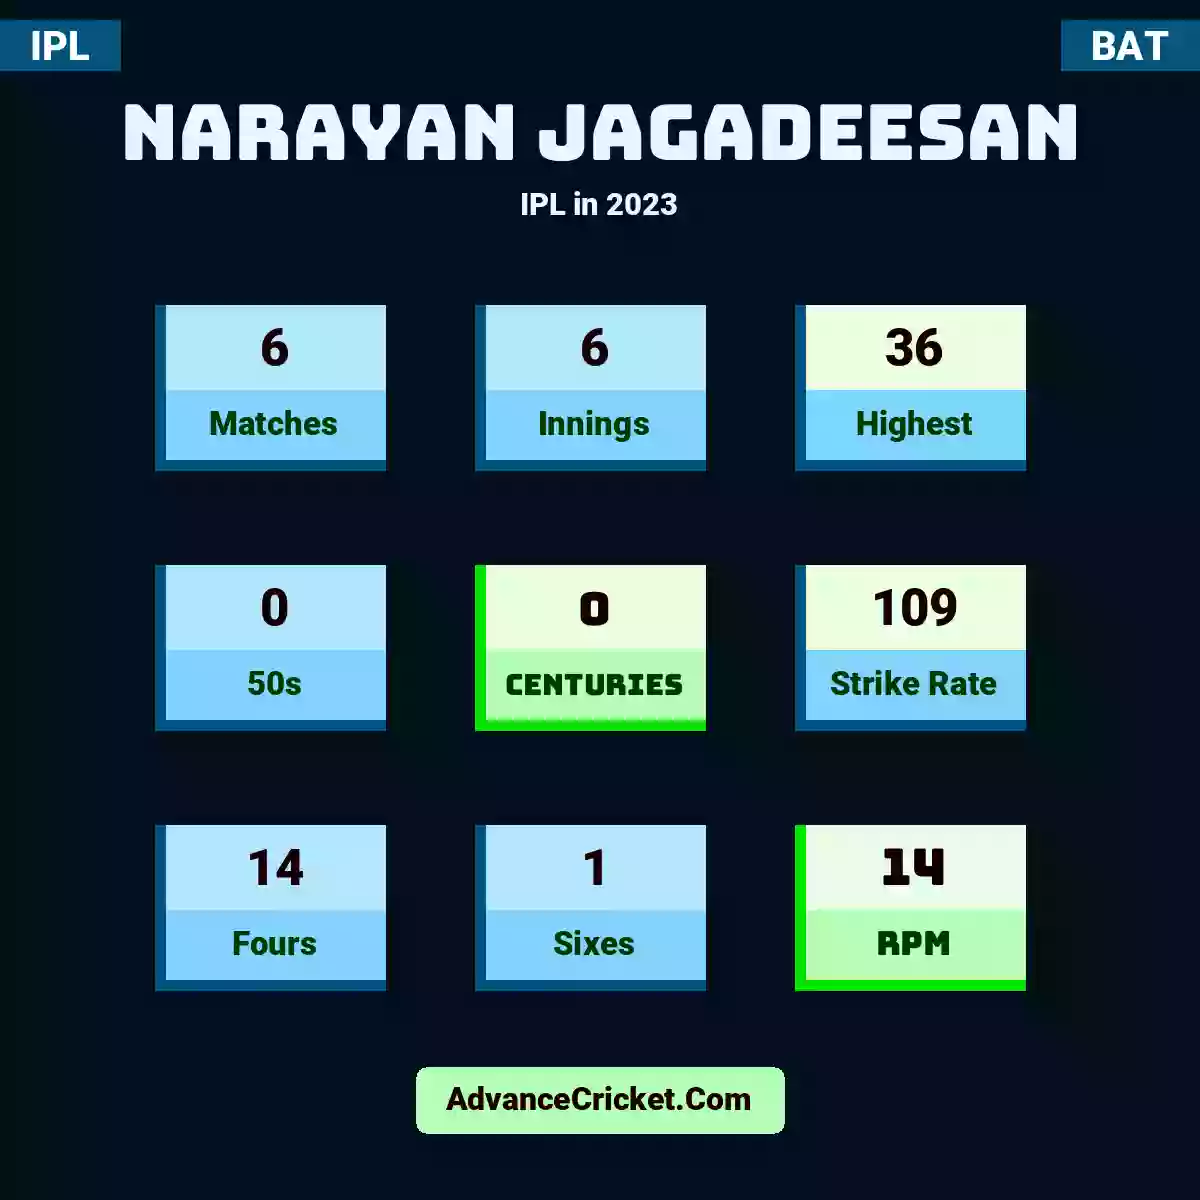 Narayan Jagadeesan IPL  in 2023, Narayan Jagadeesan played 6 matches, scored 36 runs as highest, 0 half-centuries, and 0 centuries, with a strike rate of 109. N.Jagadeesan hit 14 fours and 1 sixes, with an RPM of 14.